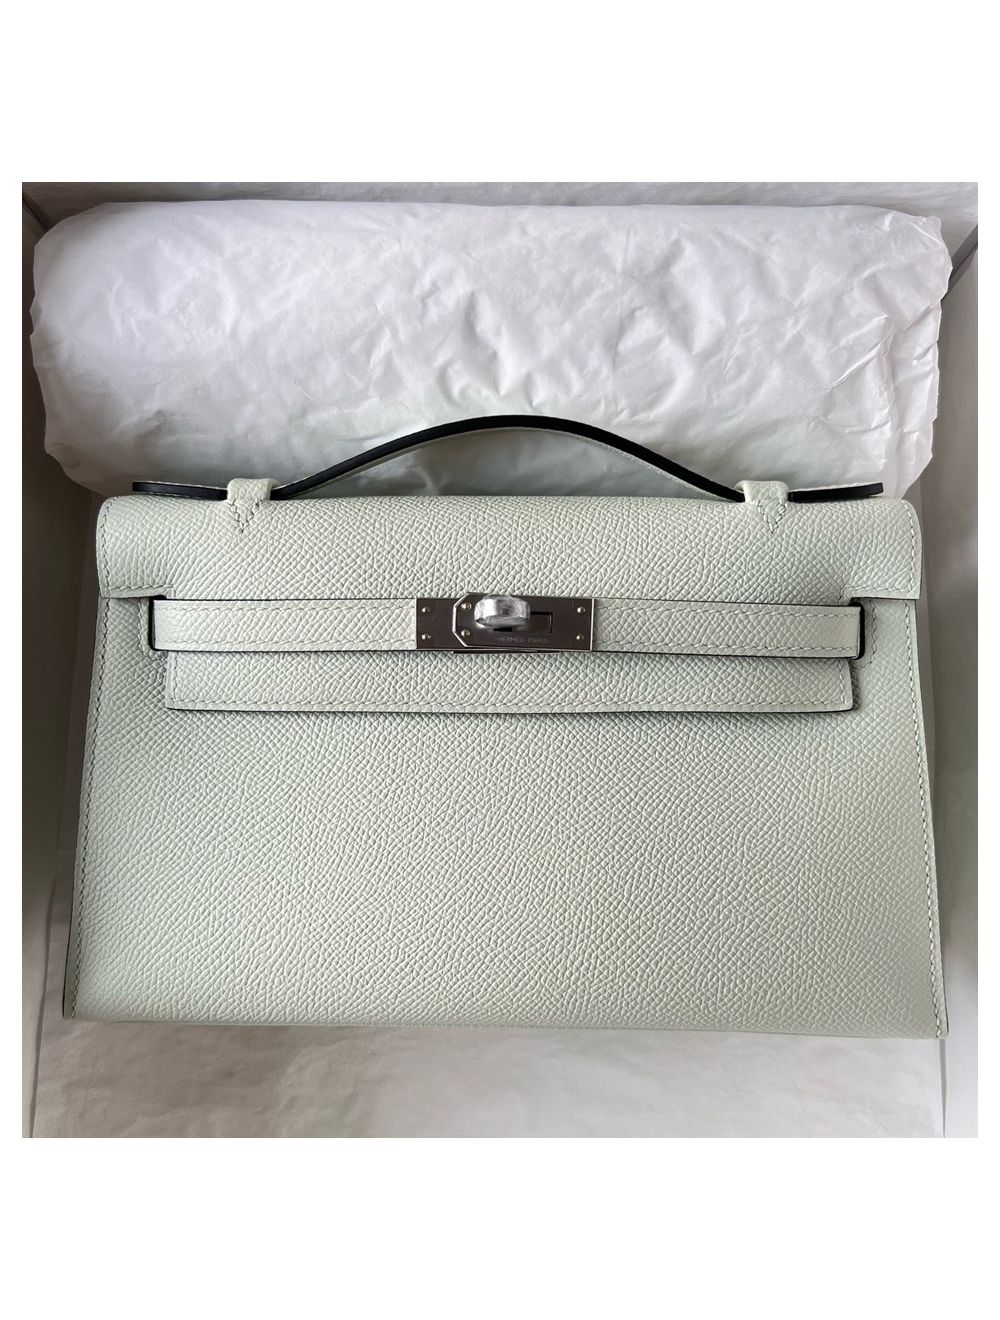 Replica Hermes Kelly Pochette Bag In White Epsom Leather